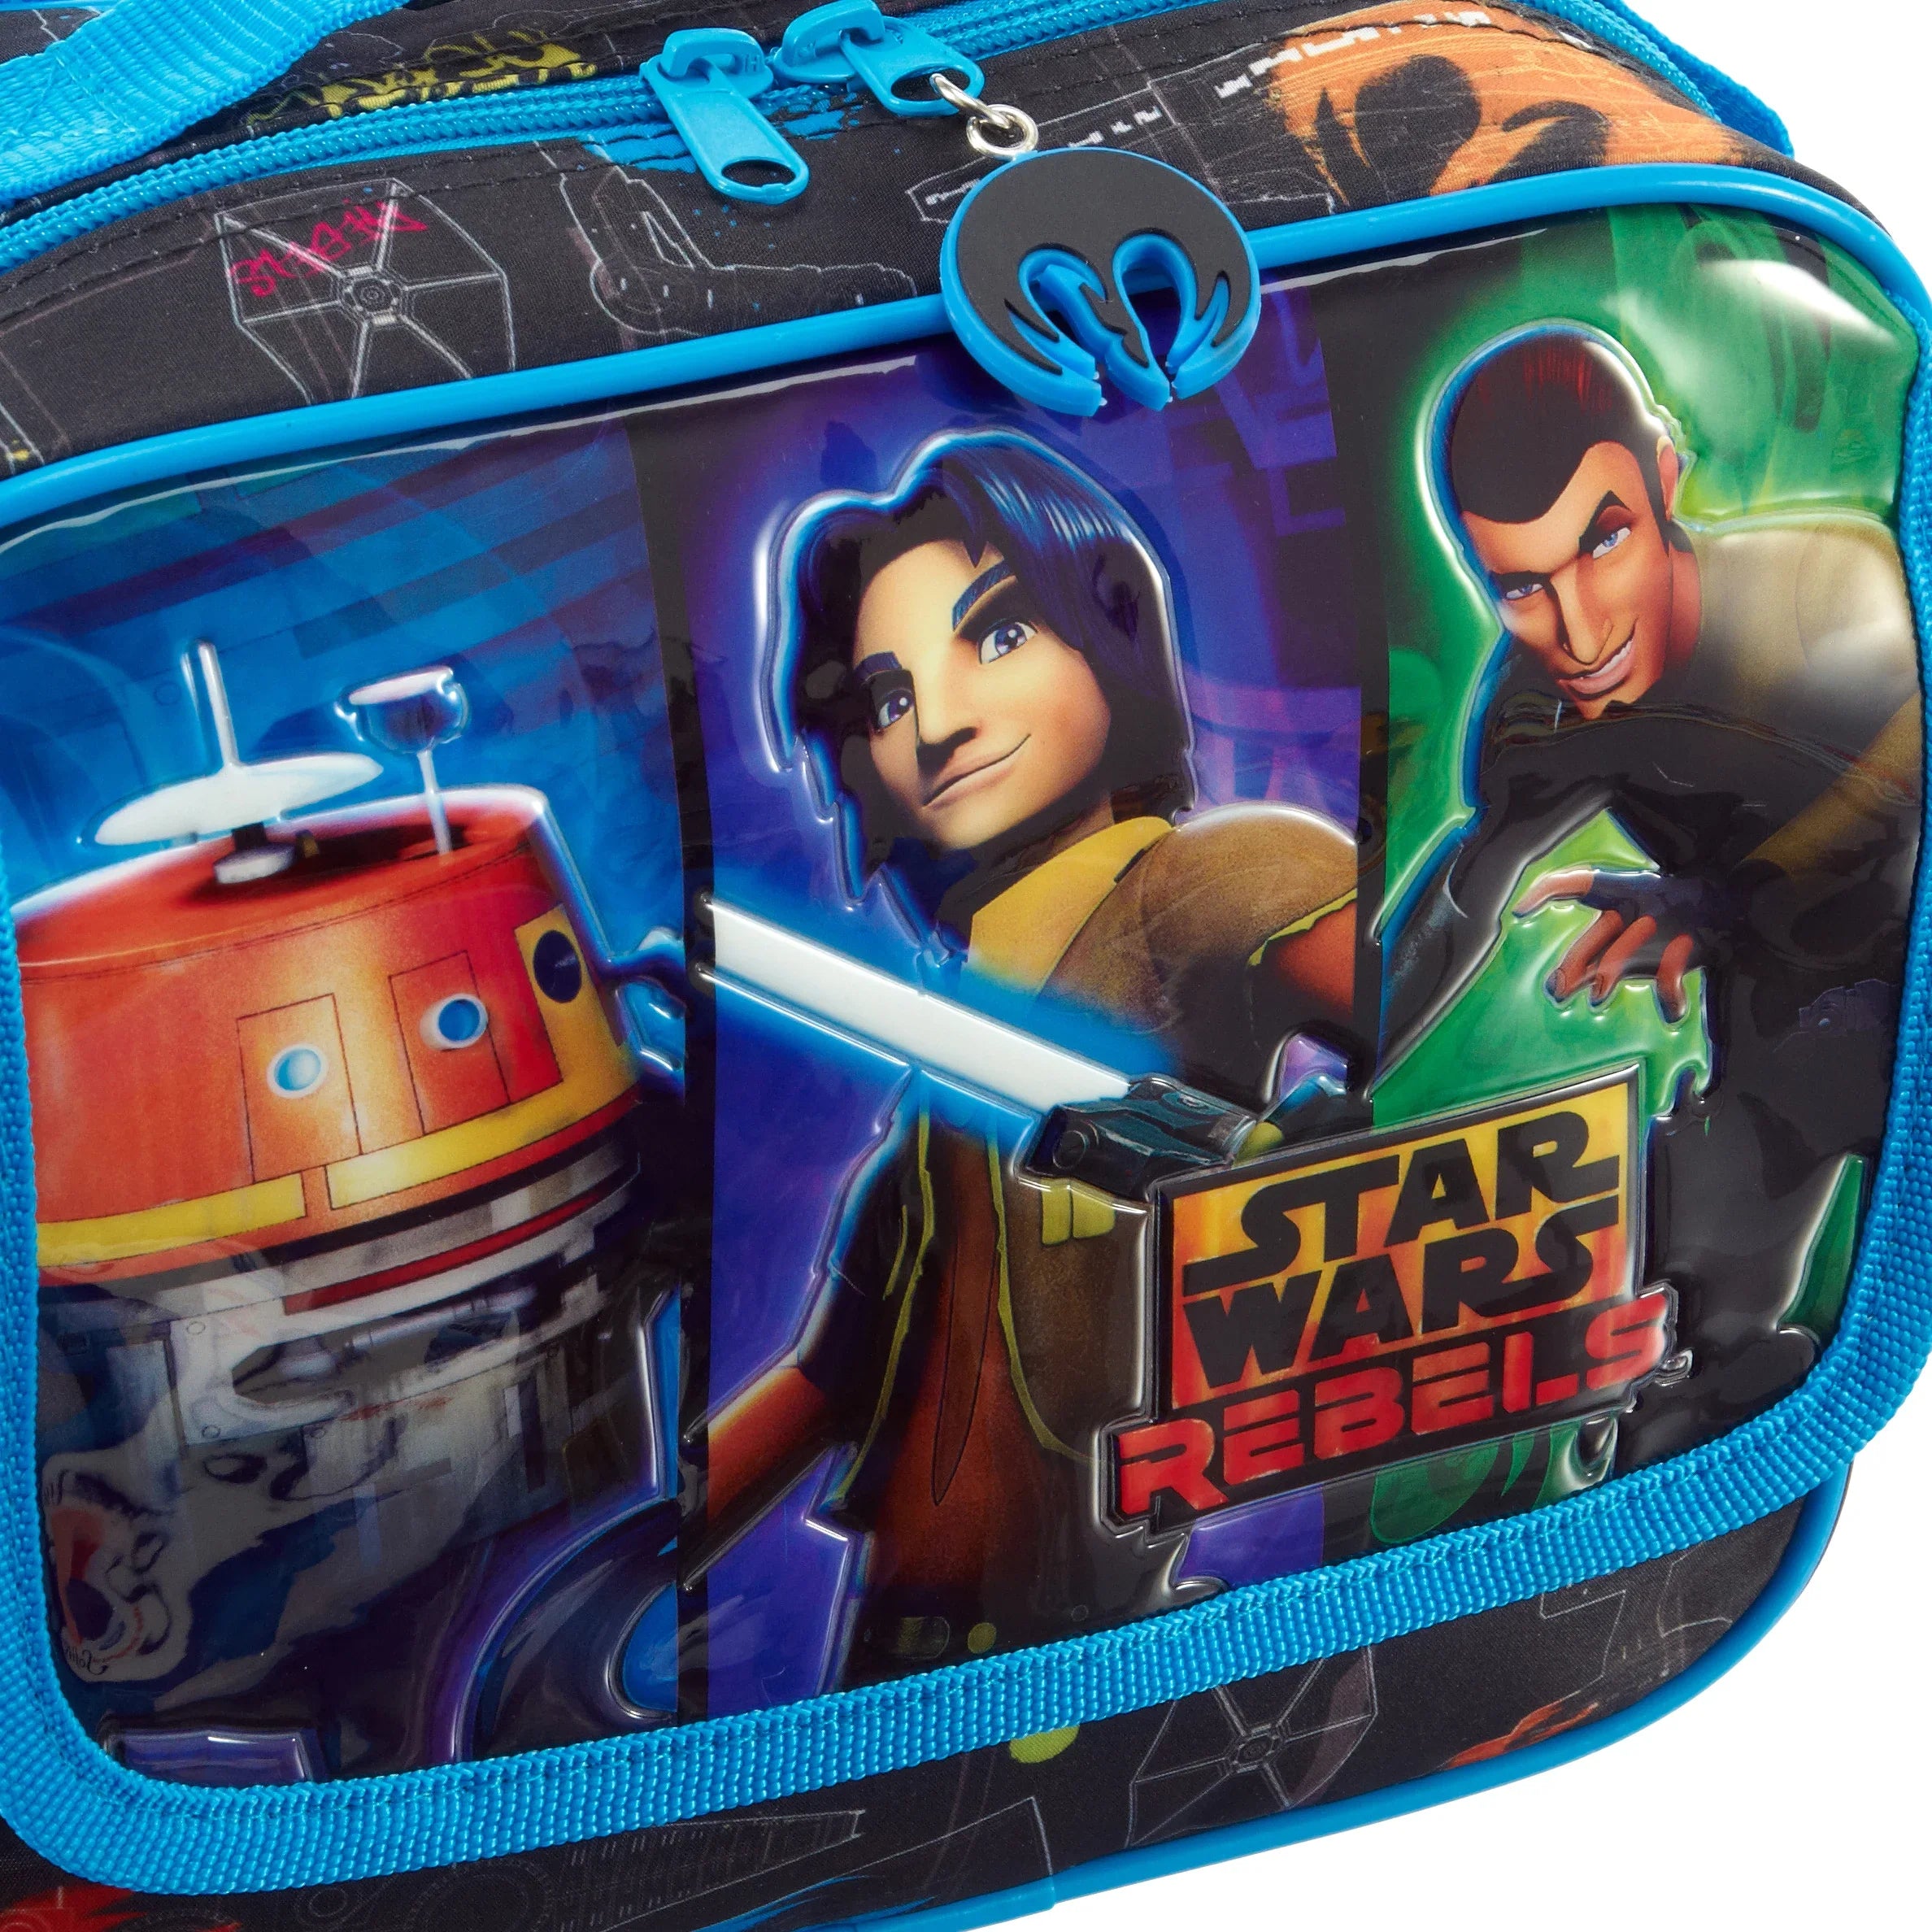 Disney Star Wars Rebels Beauty Case with shoulder strap 23 cm - colorful